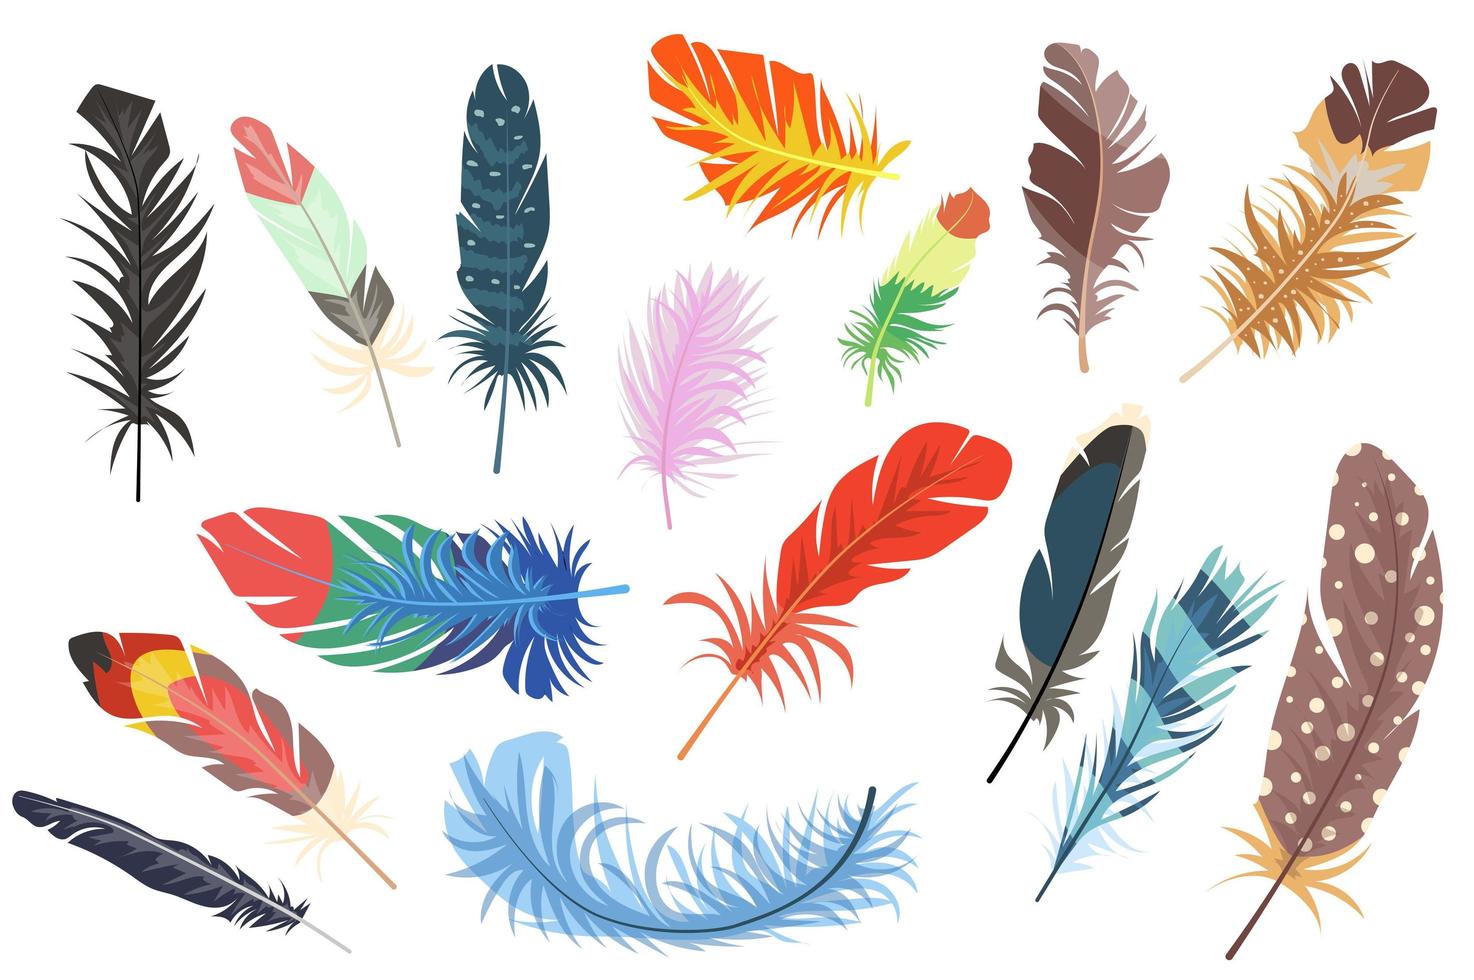 sanar distrito Rebajar conjunto de elementos aislados de plumas. paquete de diferentes tipos de  plumas de aves de colores